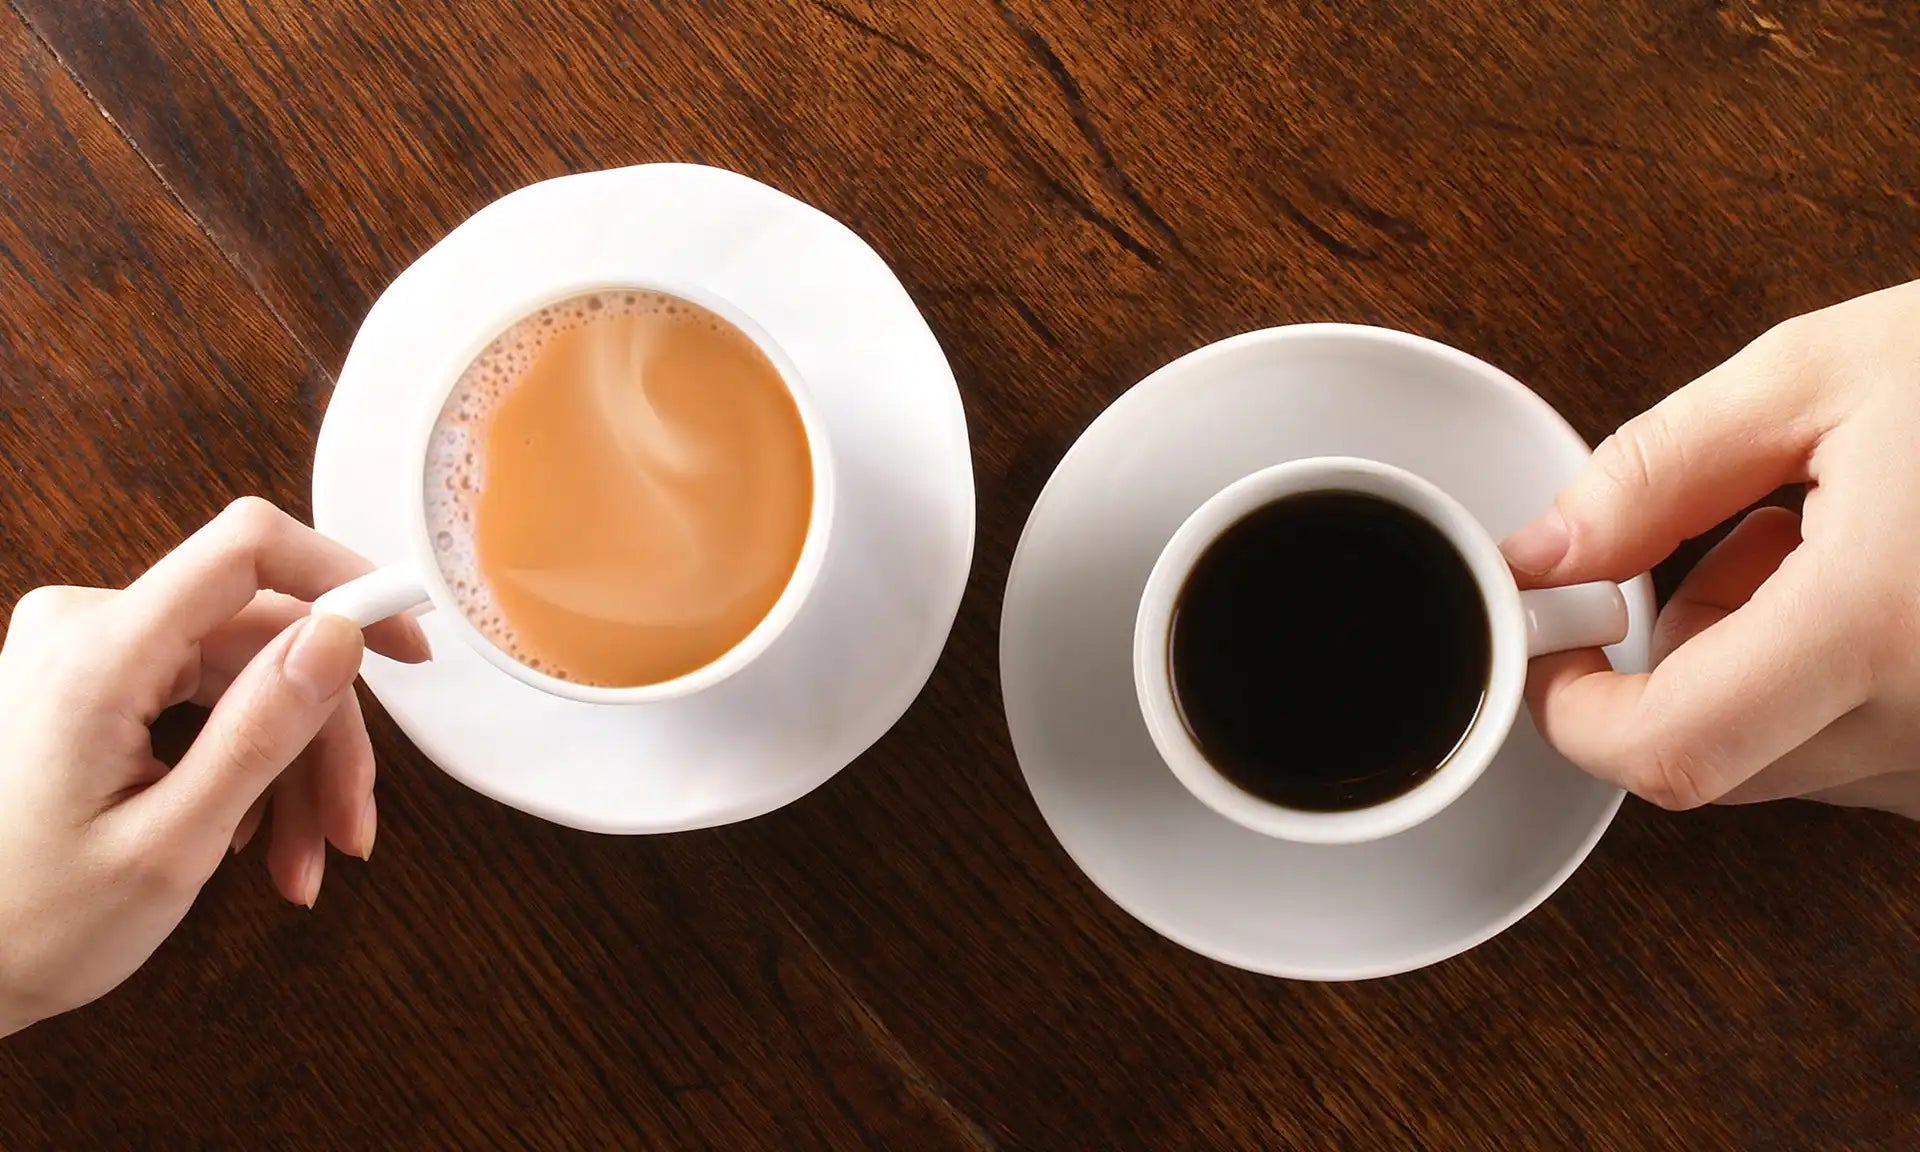 Tea or Coffee - Let's End This Debate